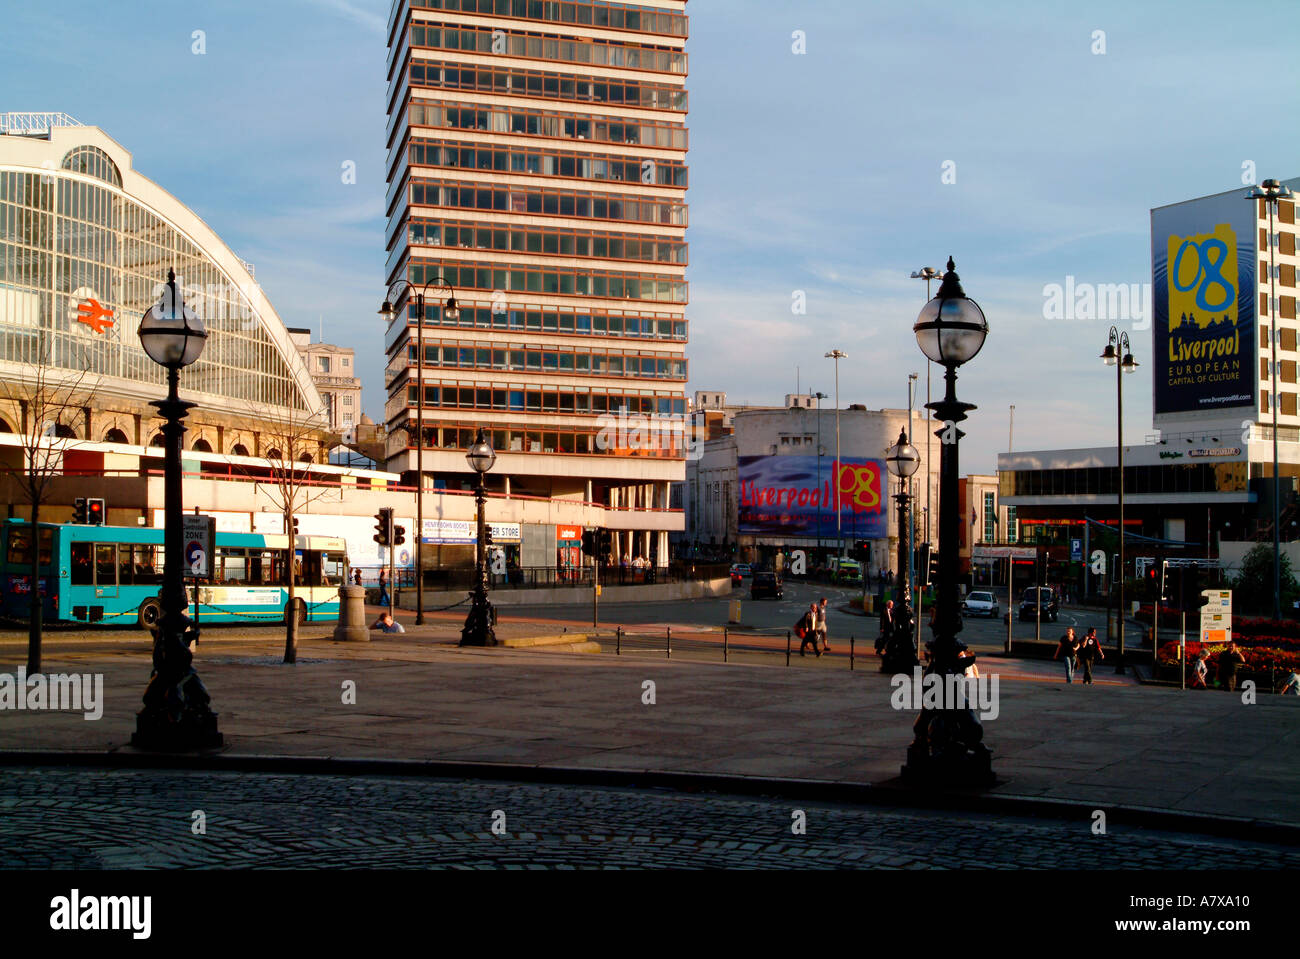 Liverpool-Hauptstadt der Kultur 08 banner Stockfoto